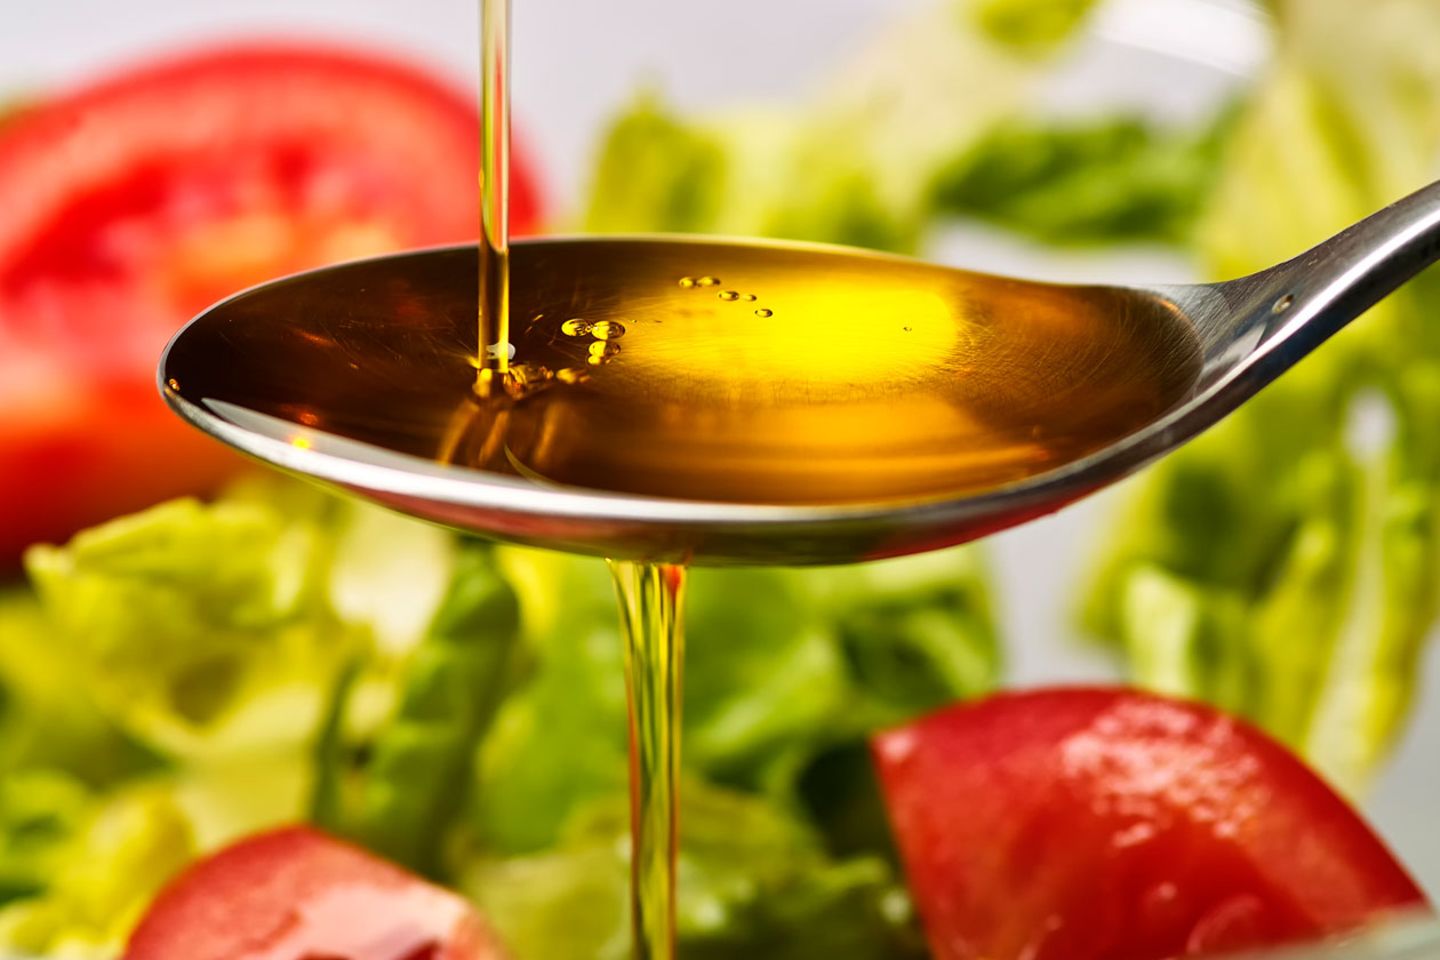 Für Olivenöle, die auch für den deutschen Markt bestimmt waren, wurden beim italienischen Hersteller acht verschiedene Öle gemischt, darunter auch minderwertige und ranzige.